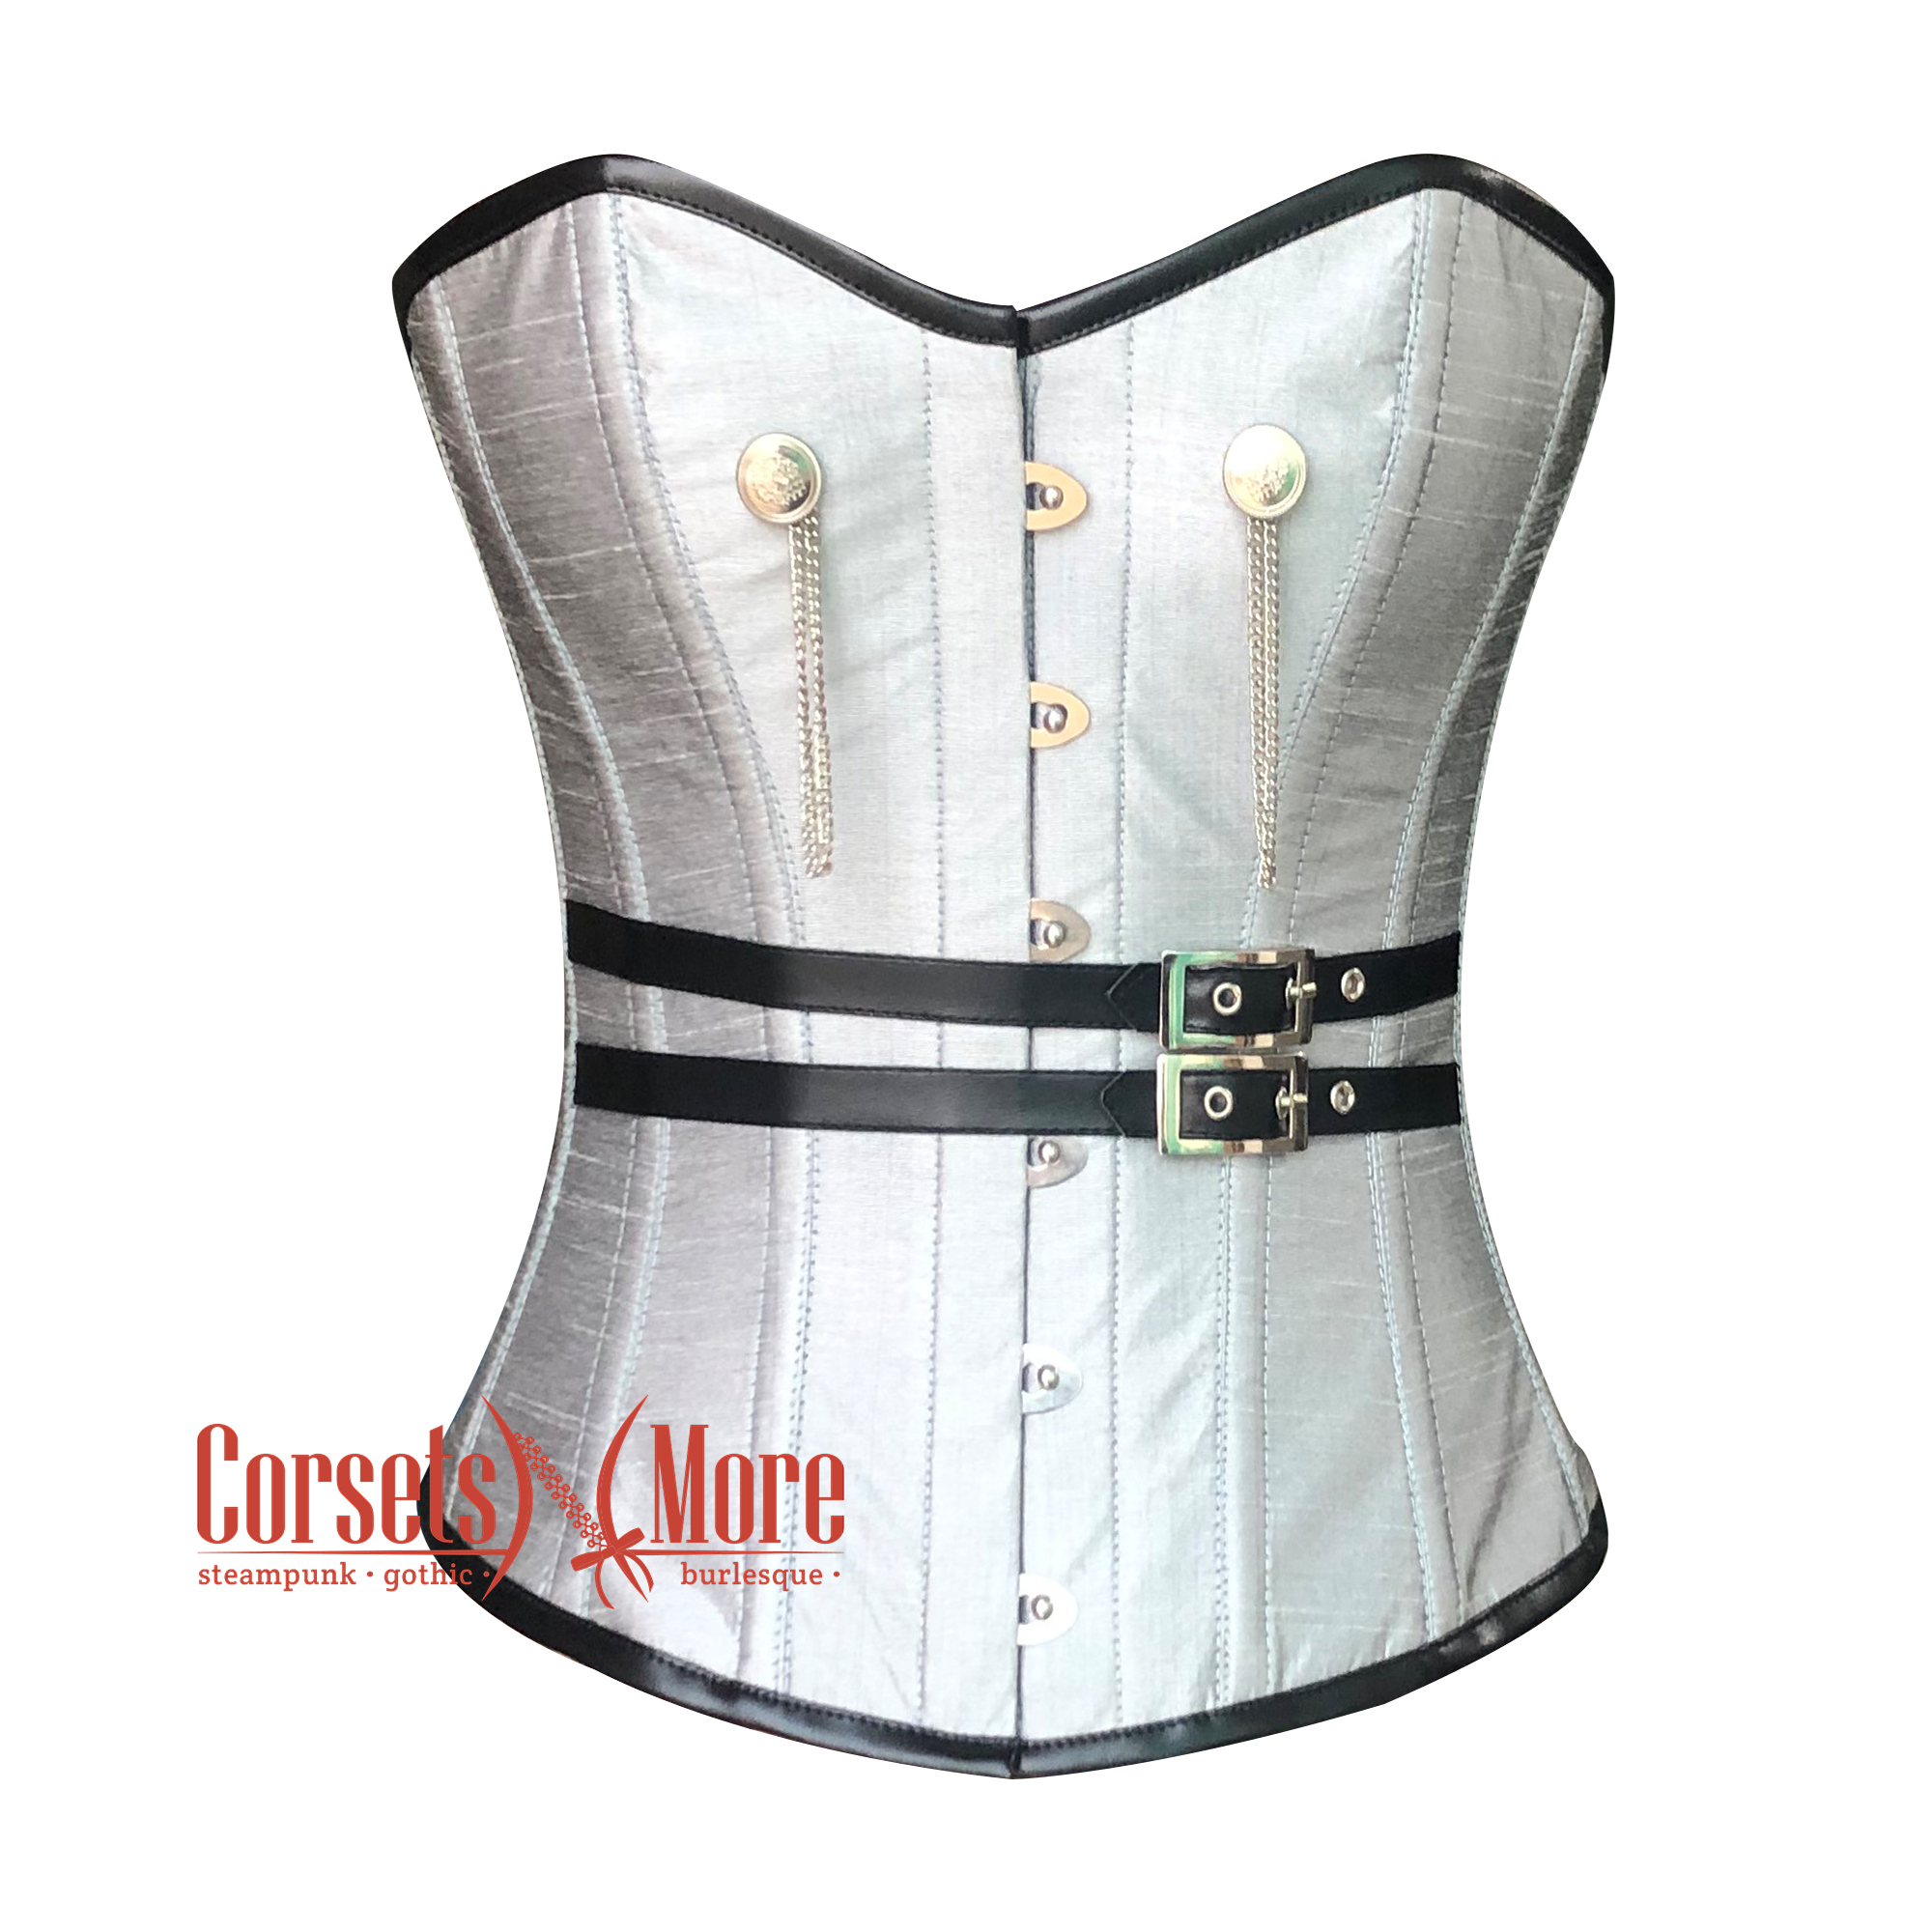 http://corsetsnmore.com/cdn/shop/products/CNM-1246_1_62867797-55ed-431d-831d-7057a5002b40.png?v=1676980586